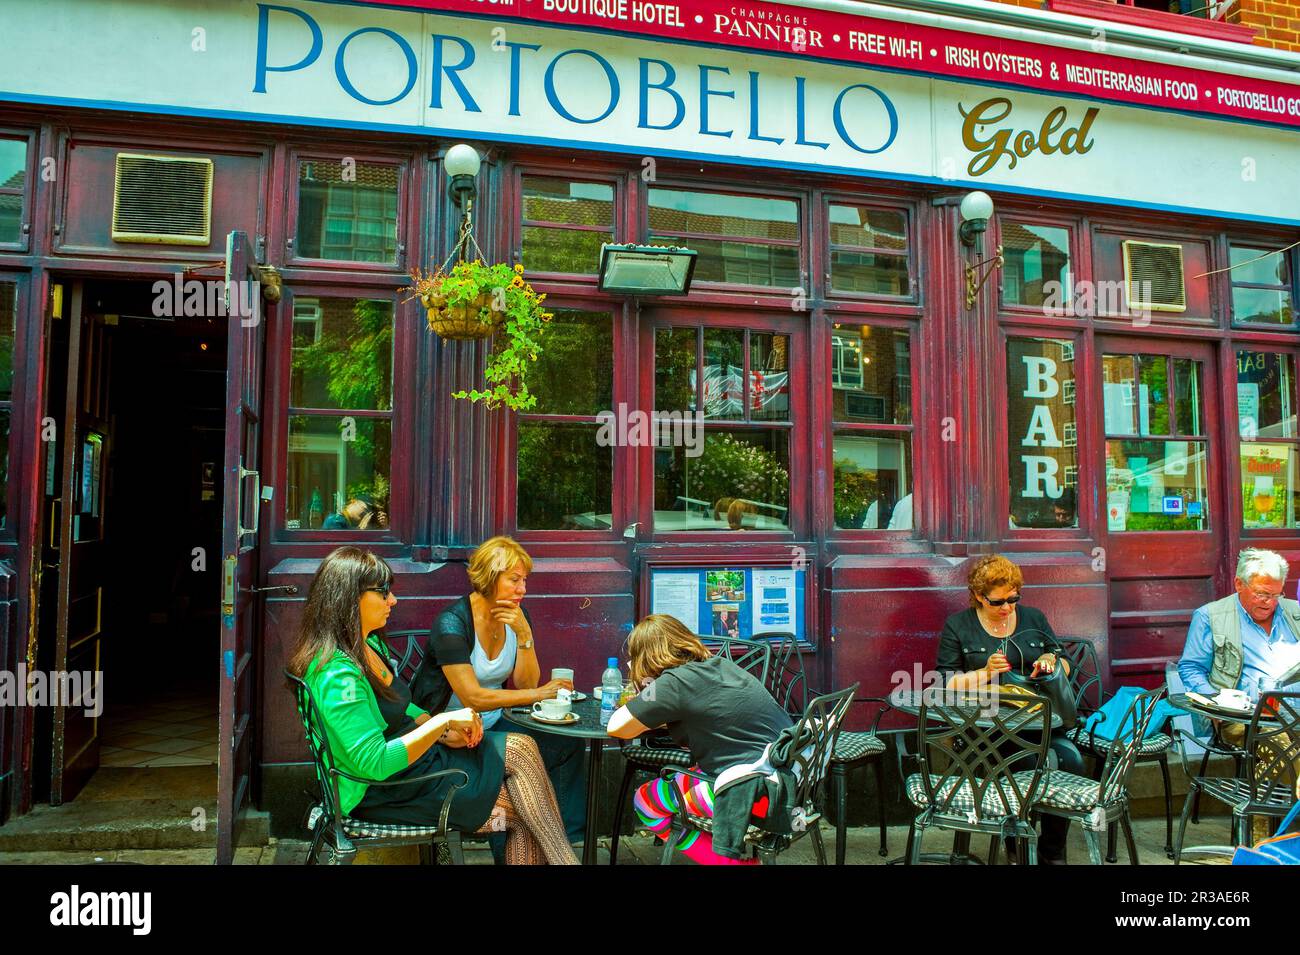 Londres, Royaume-Uni, personnes en petit groupe partageant des boissons sur la terrasse à l'extérieur du pub local, scènes de rue, Portobello Road Market, panneau avant Banque D'Images